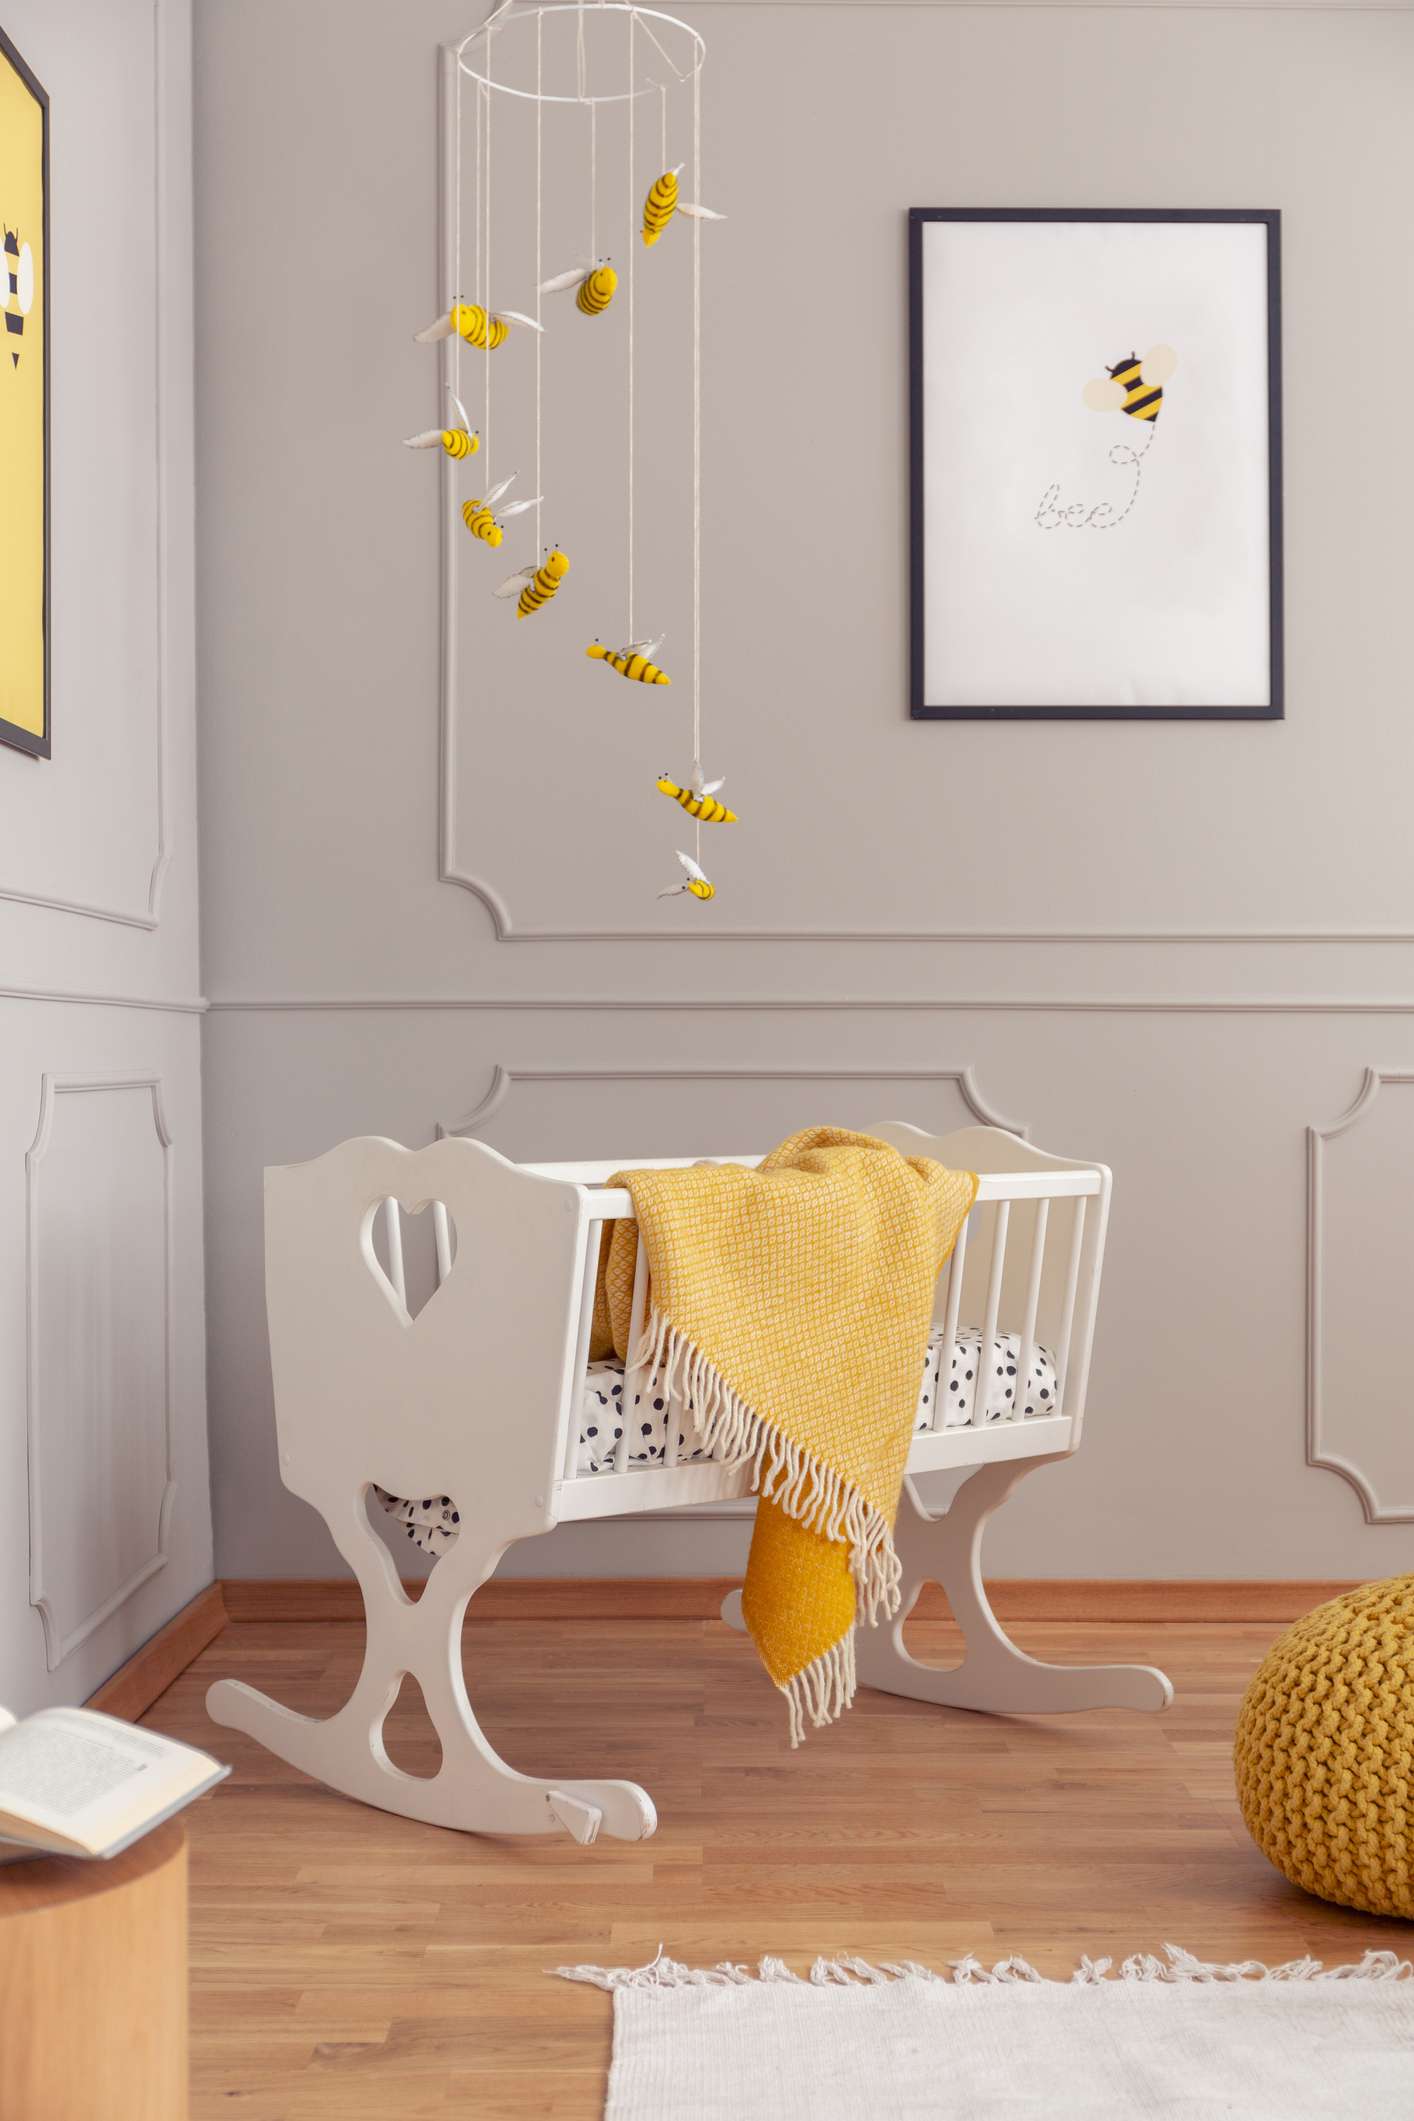 Bienen über weißer Holzwiege in grauem Babyzimmer mit Poster an der leeren Wand